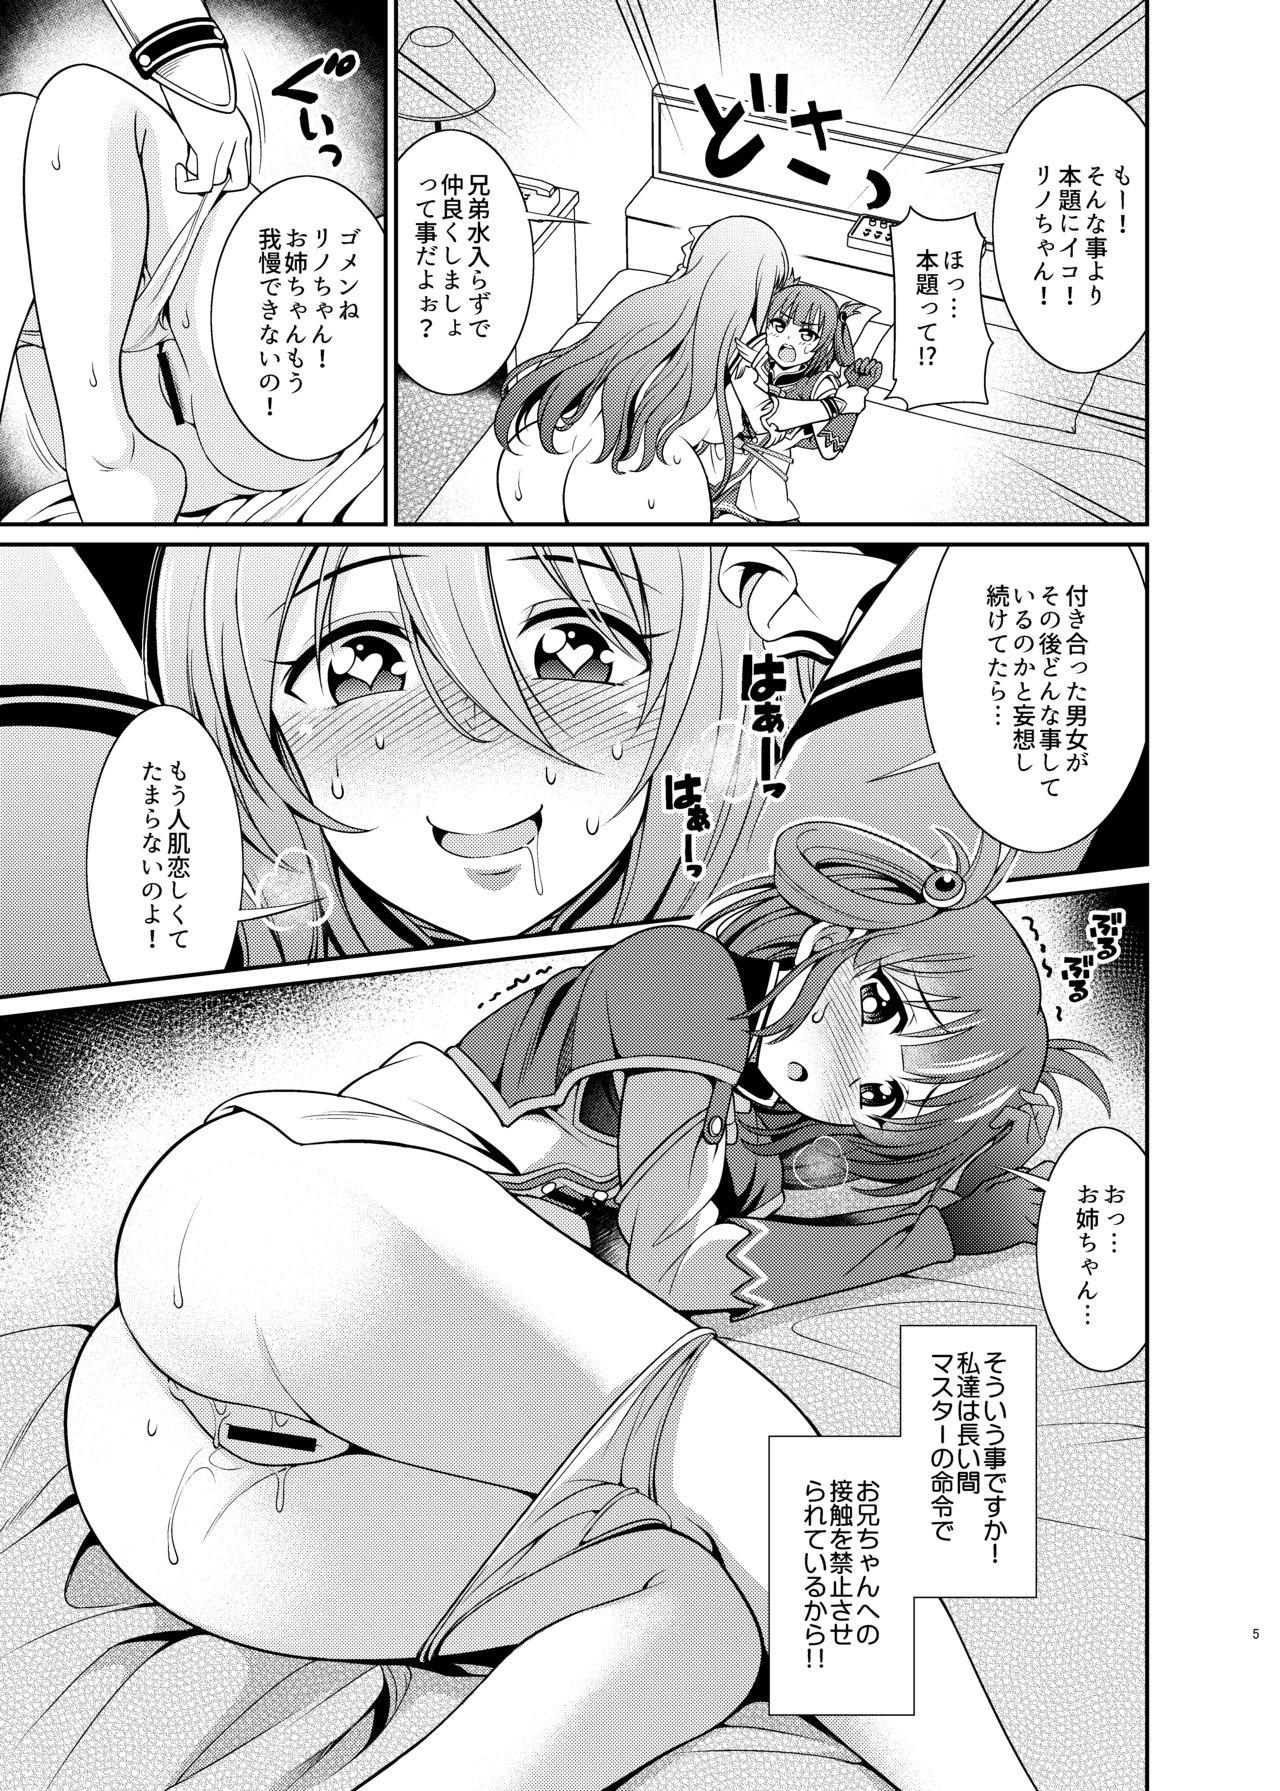 Flaca Kinyoku Seikatsu nante Kiwameru kara... Ochinchin ga Haechaun desu yo! - Princess connect Novinhas - Page 5